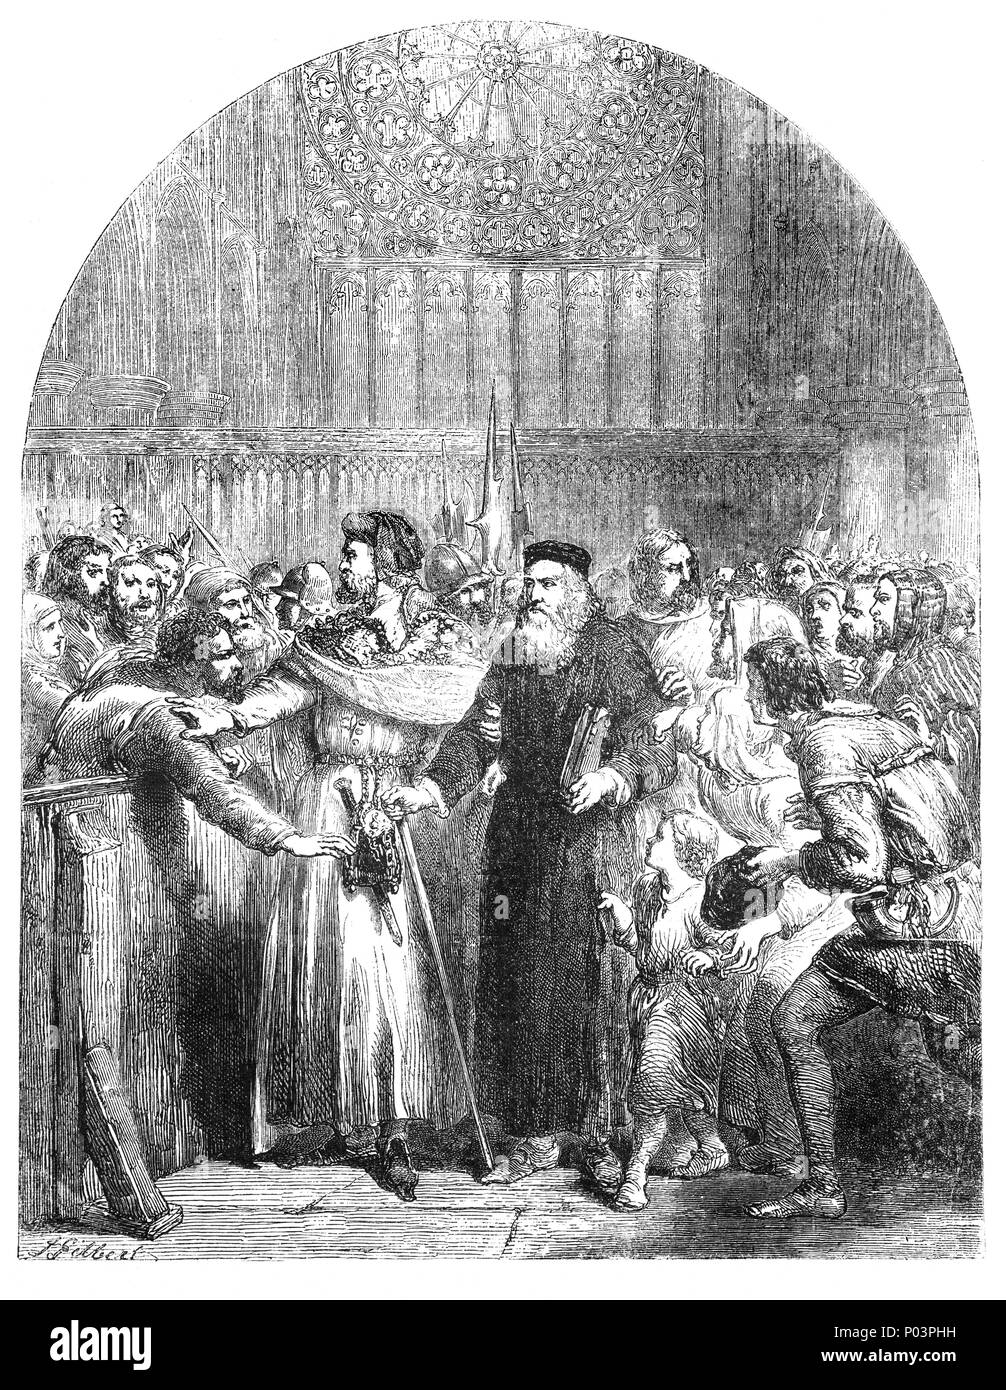 John Wyclif (1320-1384) était un philosophe, théologien scolastique, traducteur de la Bible, réformateur, anglican, et un séminaire, professeur à l'Université d'Oxford. Il a été un dissident au sein de la prêtrise catholique romaine et est considéré comme un important prédécesseur au protestantisme. Wycliffe a attaqué le statut privilégié du clergé et, en mars 1378, il a été cité à comparaître à Lambeth Palace pour se défendre. Cependant, sir Lewis Clifford est entré dans la chapelle et interdisait les évêques à procéder à une phrase concernant la conduite de Wycliffe ou opinions. Banque D'Images